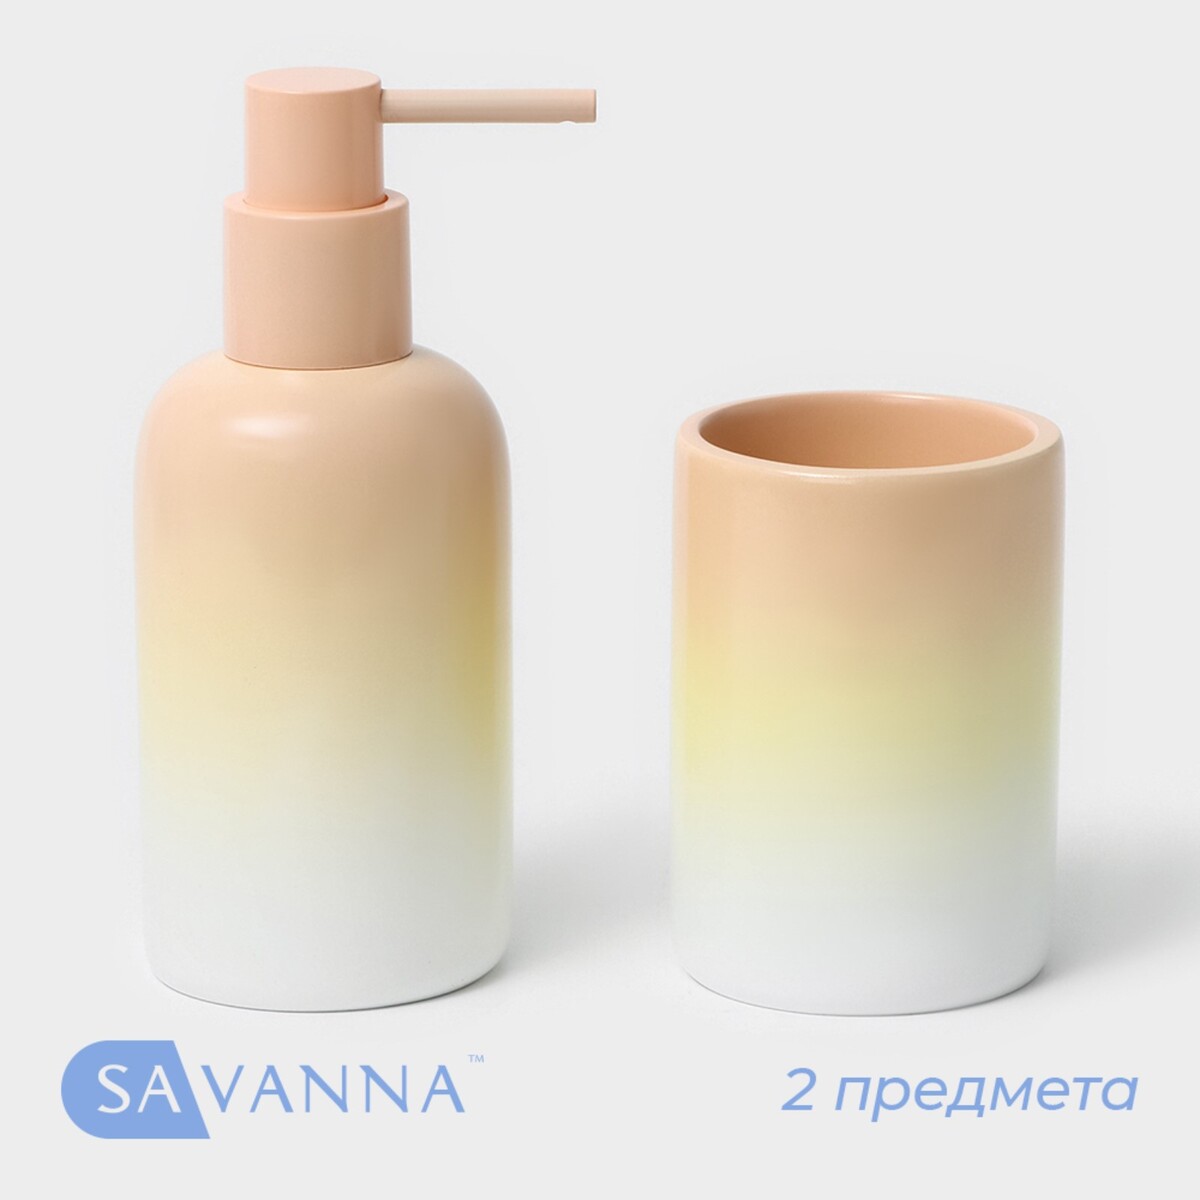 Набор аксессуаров для ванной комнаты savanna, 2 предмета: дозатор для мыла 290 мл, стакан 280 мл набор аксессуаров для ванной комнаты